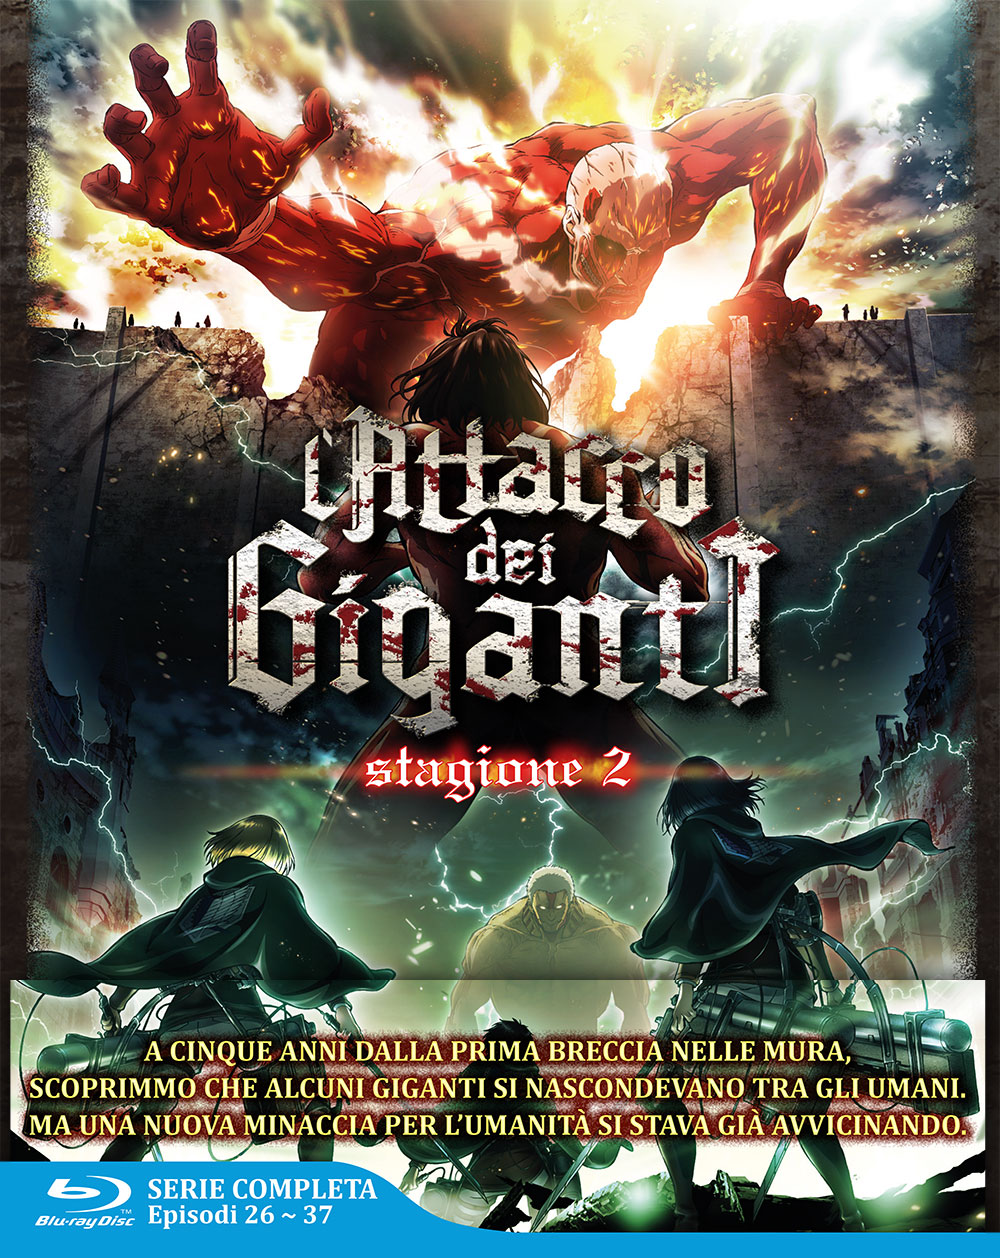 Blu-Ray Attacco Dei Giganti (L') - Stagione 02 The Complete Series (Eps 01-12) (3 Blu-Ray) NUOVO SIGILLATO, EDIZIONE DEL 27/02/2019 SUBITO DISPONIBILE